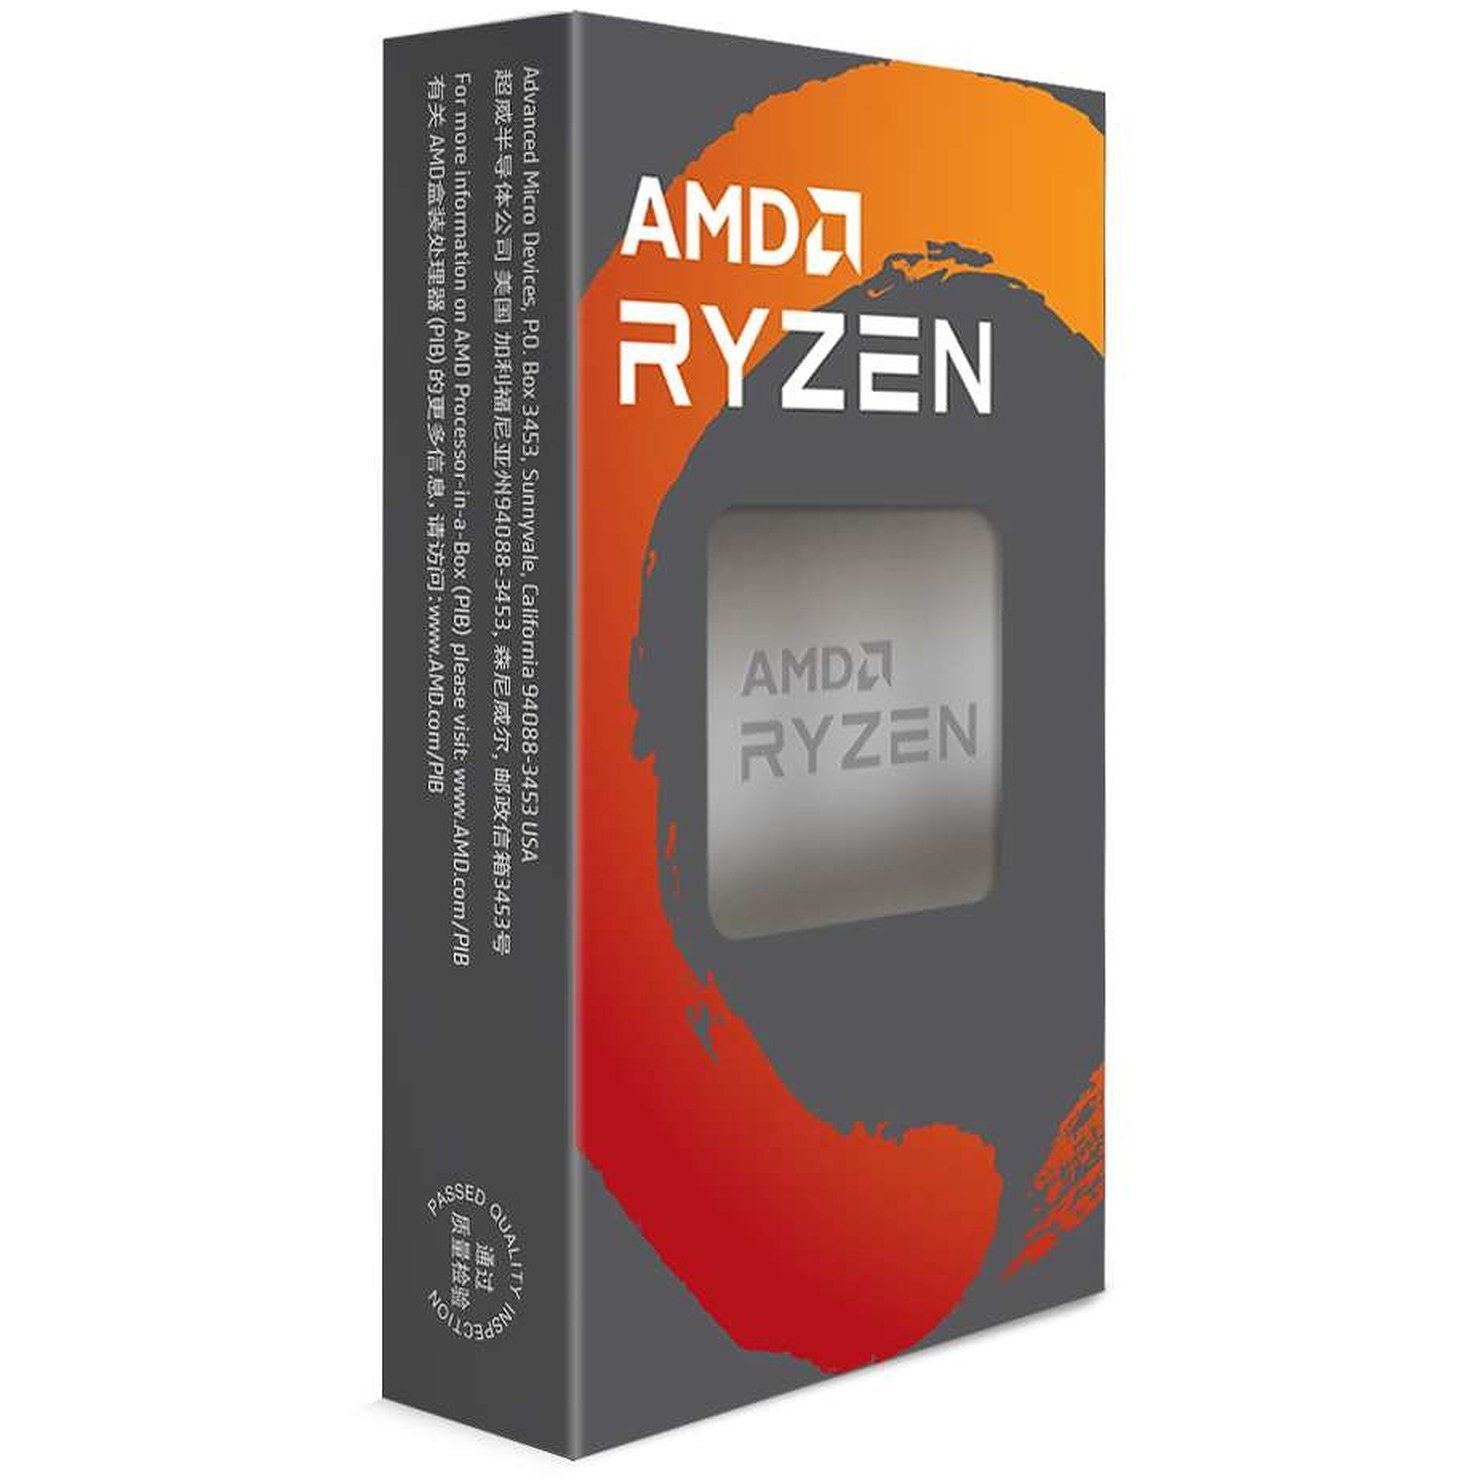 Процесор AMD Ryzen 5 3600 6C/12T 3.6/4.2GHz Boost 32Mb AM4 65W cooler Box (100-100000031AWOF)фото1